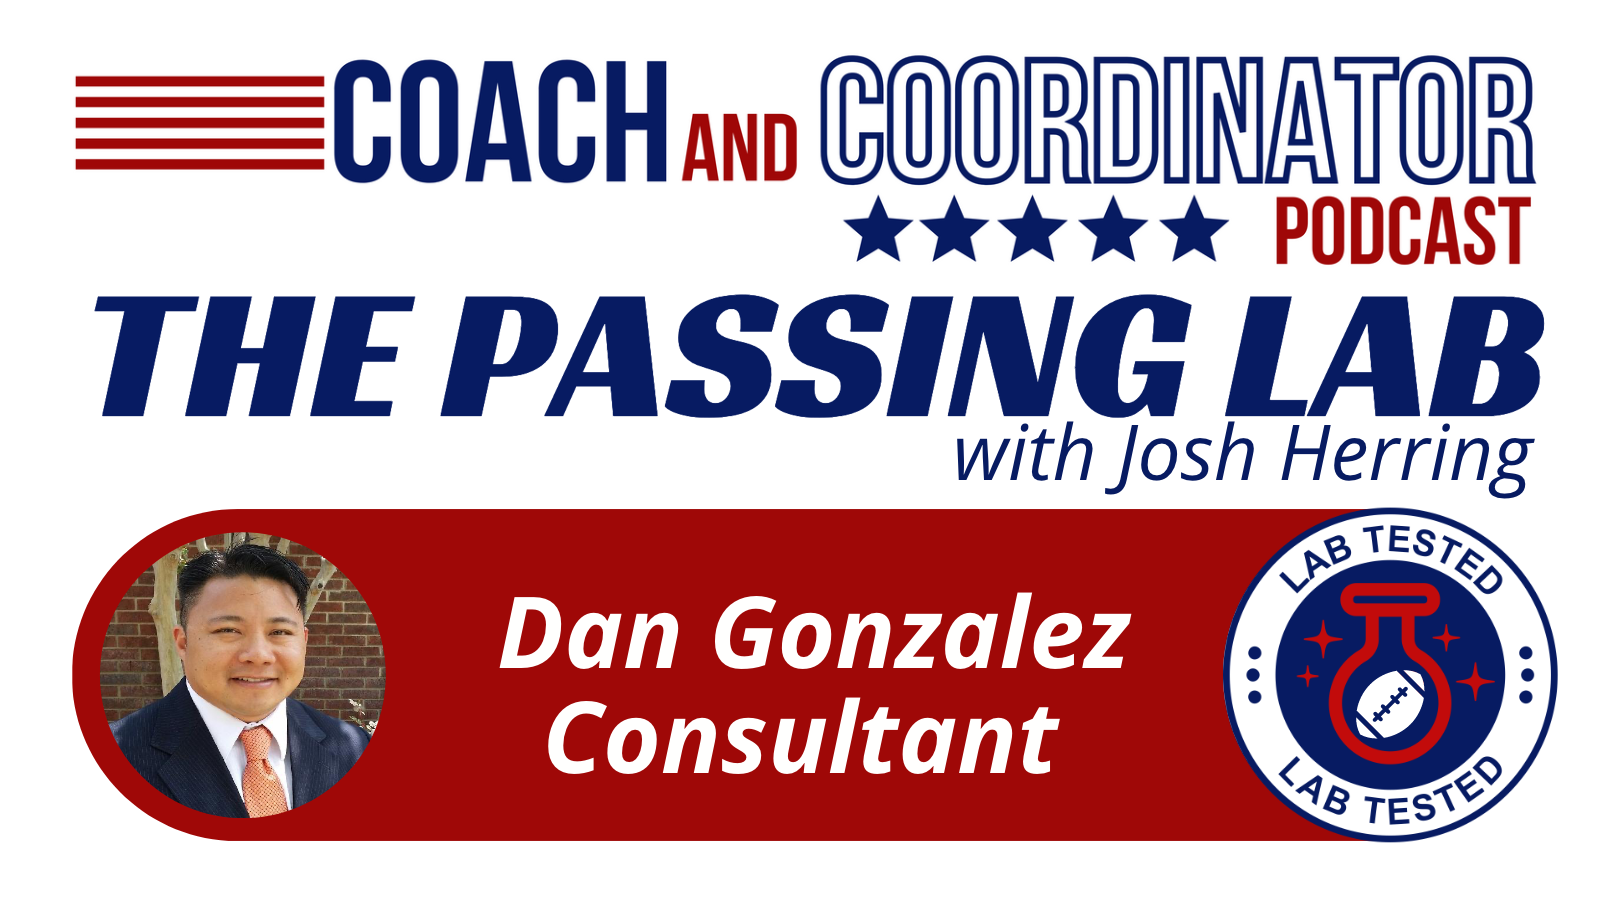 The Passing Lab Featuring Dan Gonzalez, Consultant